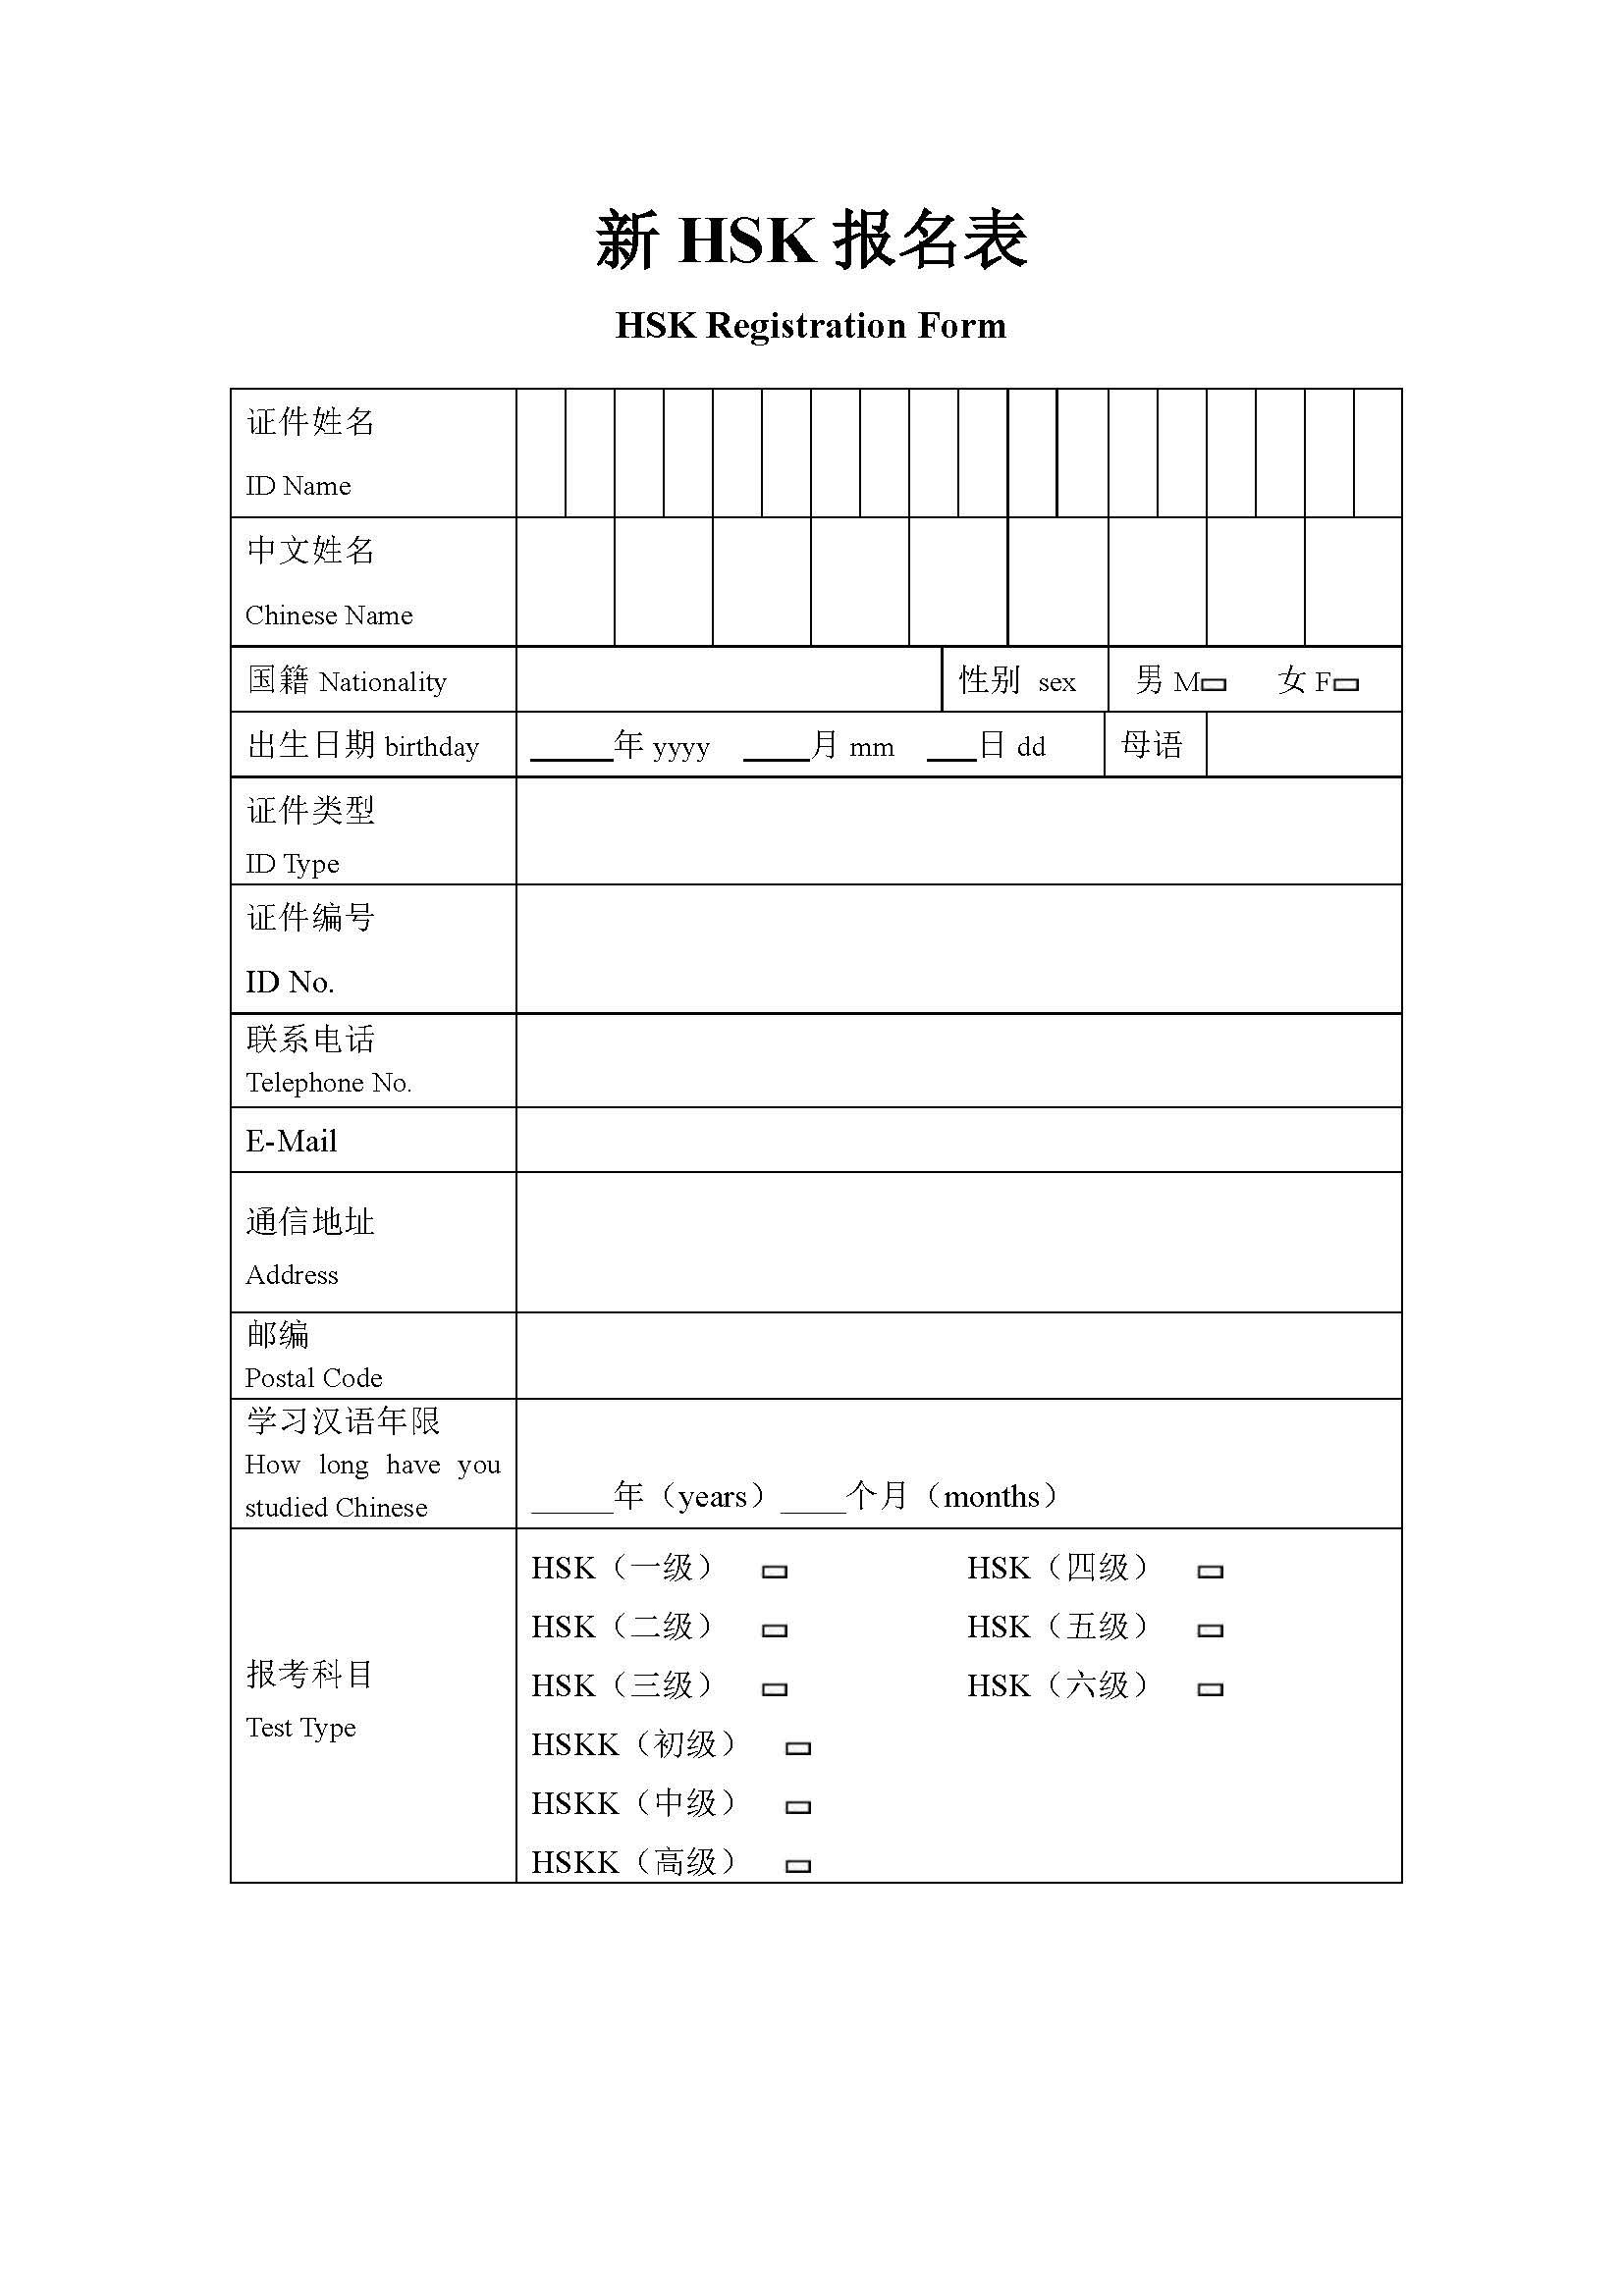 HSK Exam Registration Form 模板